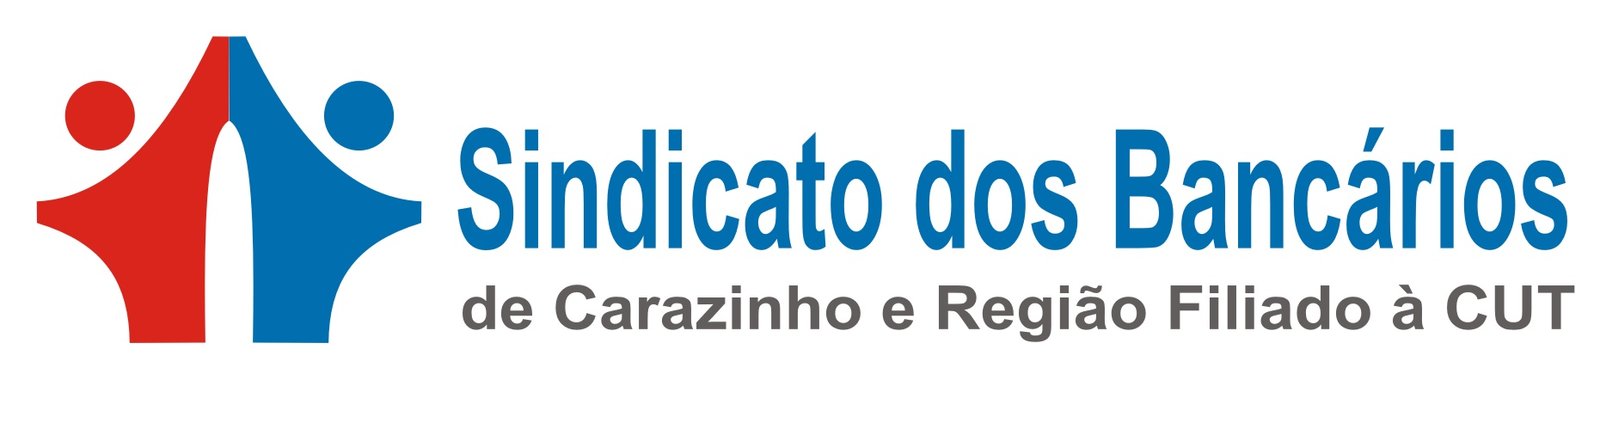 (c) Bancarioscarazinho.com.br